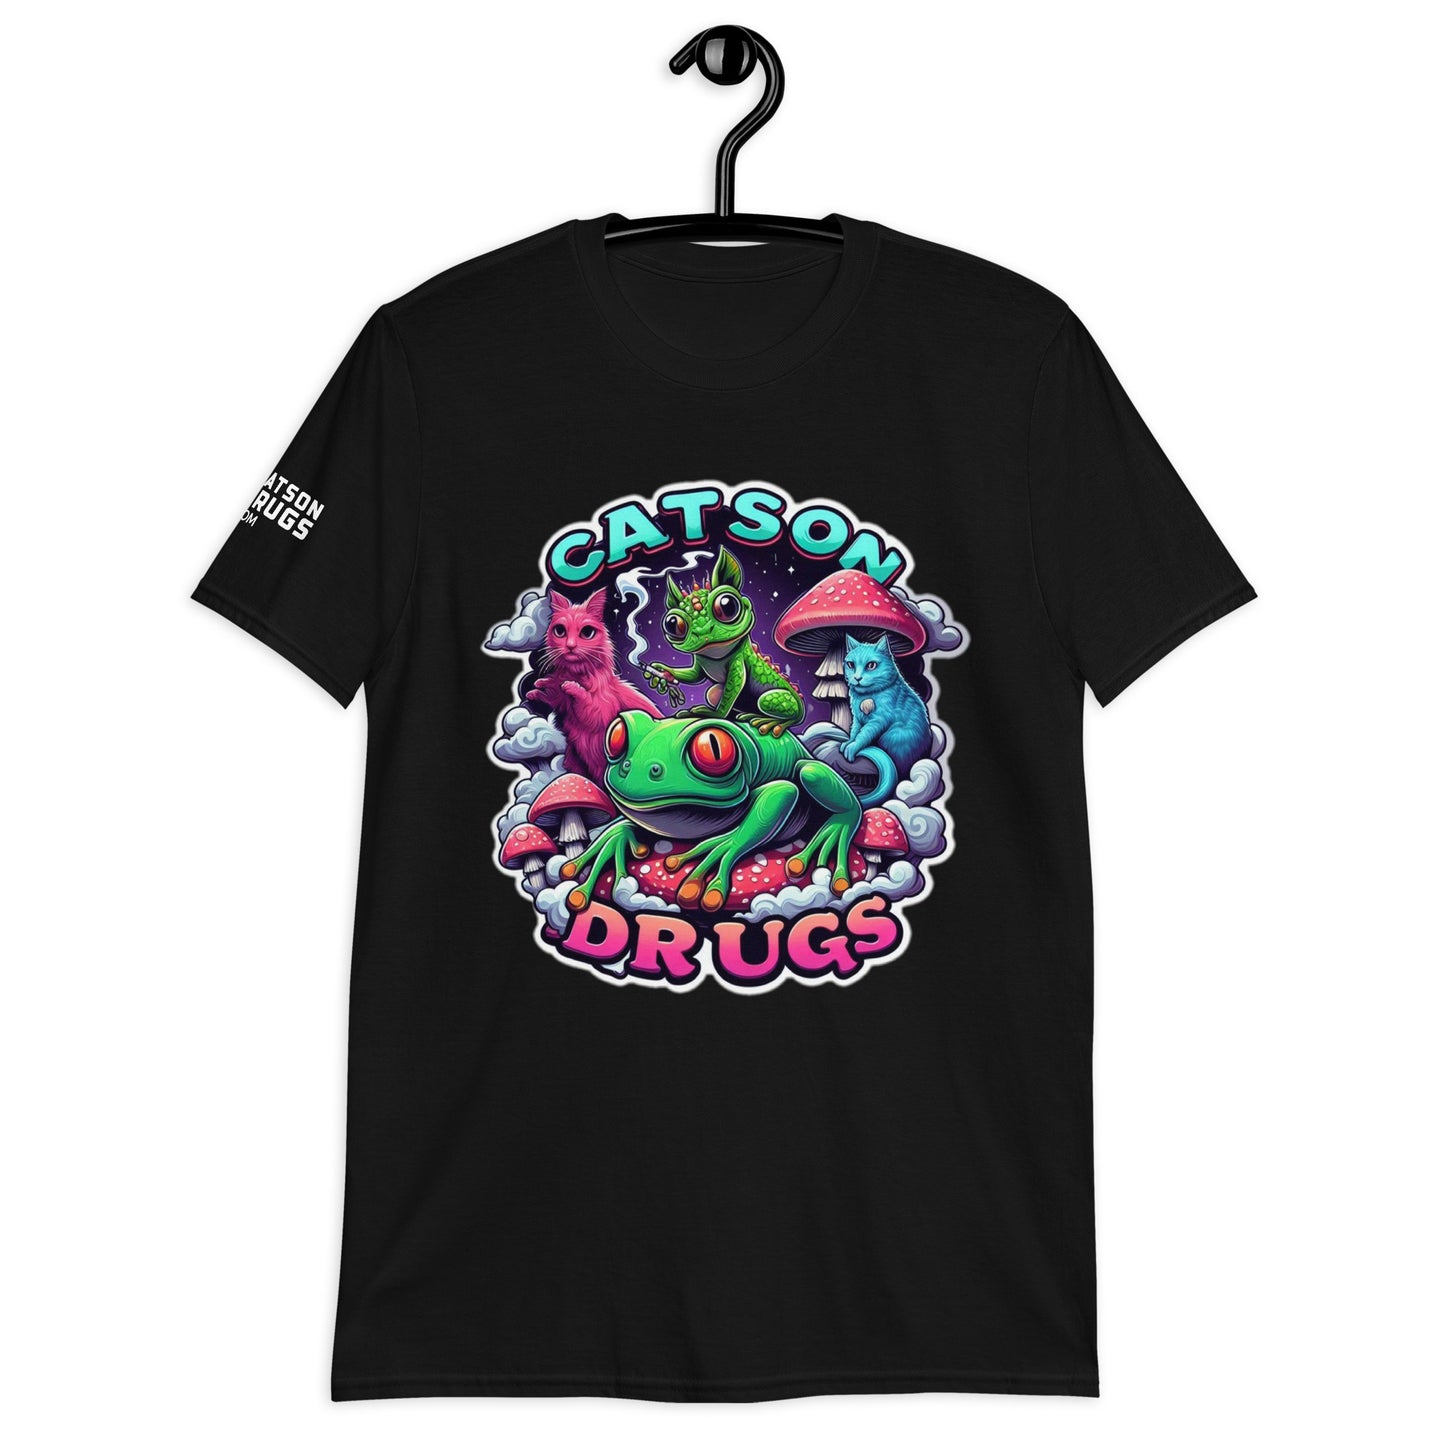 Catsondrugs - Unisex Acid T-Shirt, Ecstasy Edition